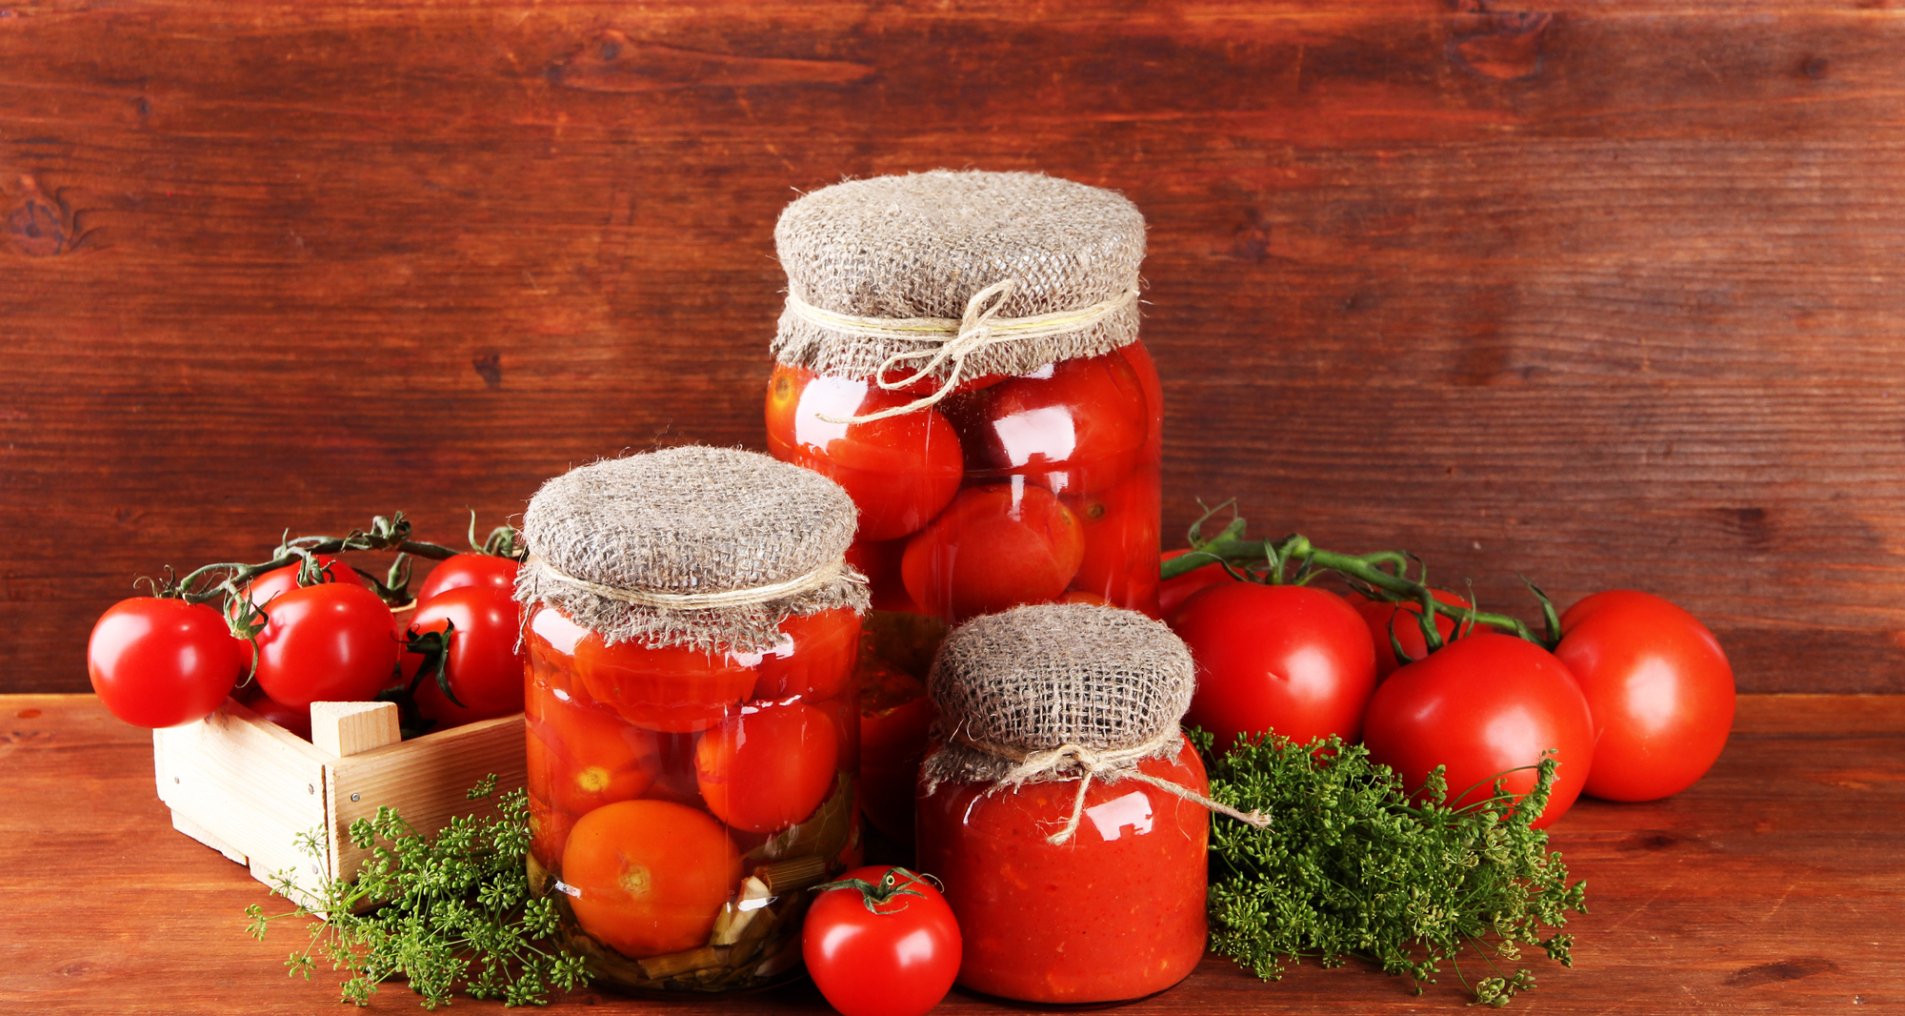 Сладкие маринованные помидоры на зиму - пошаговый рецепт с фото на Готовим дома